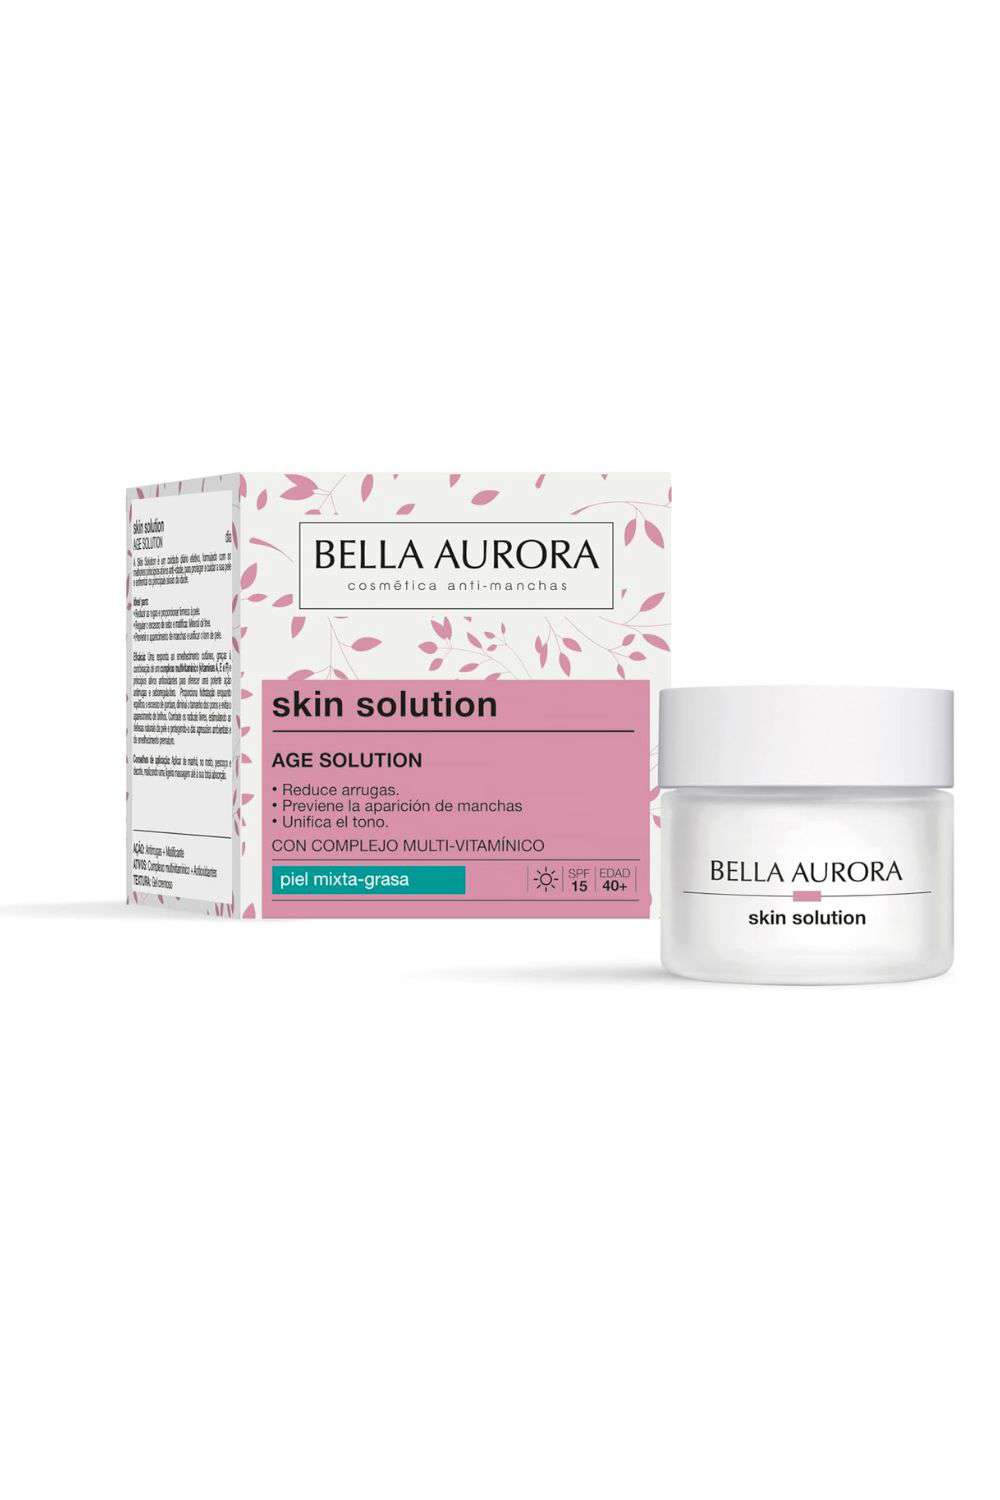 Skin Solution de BELLA AURORA